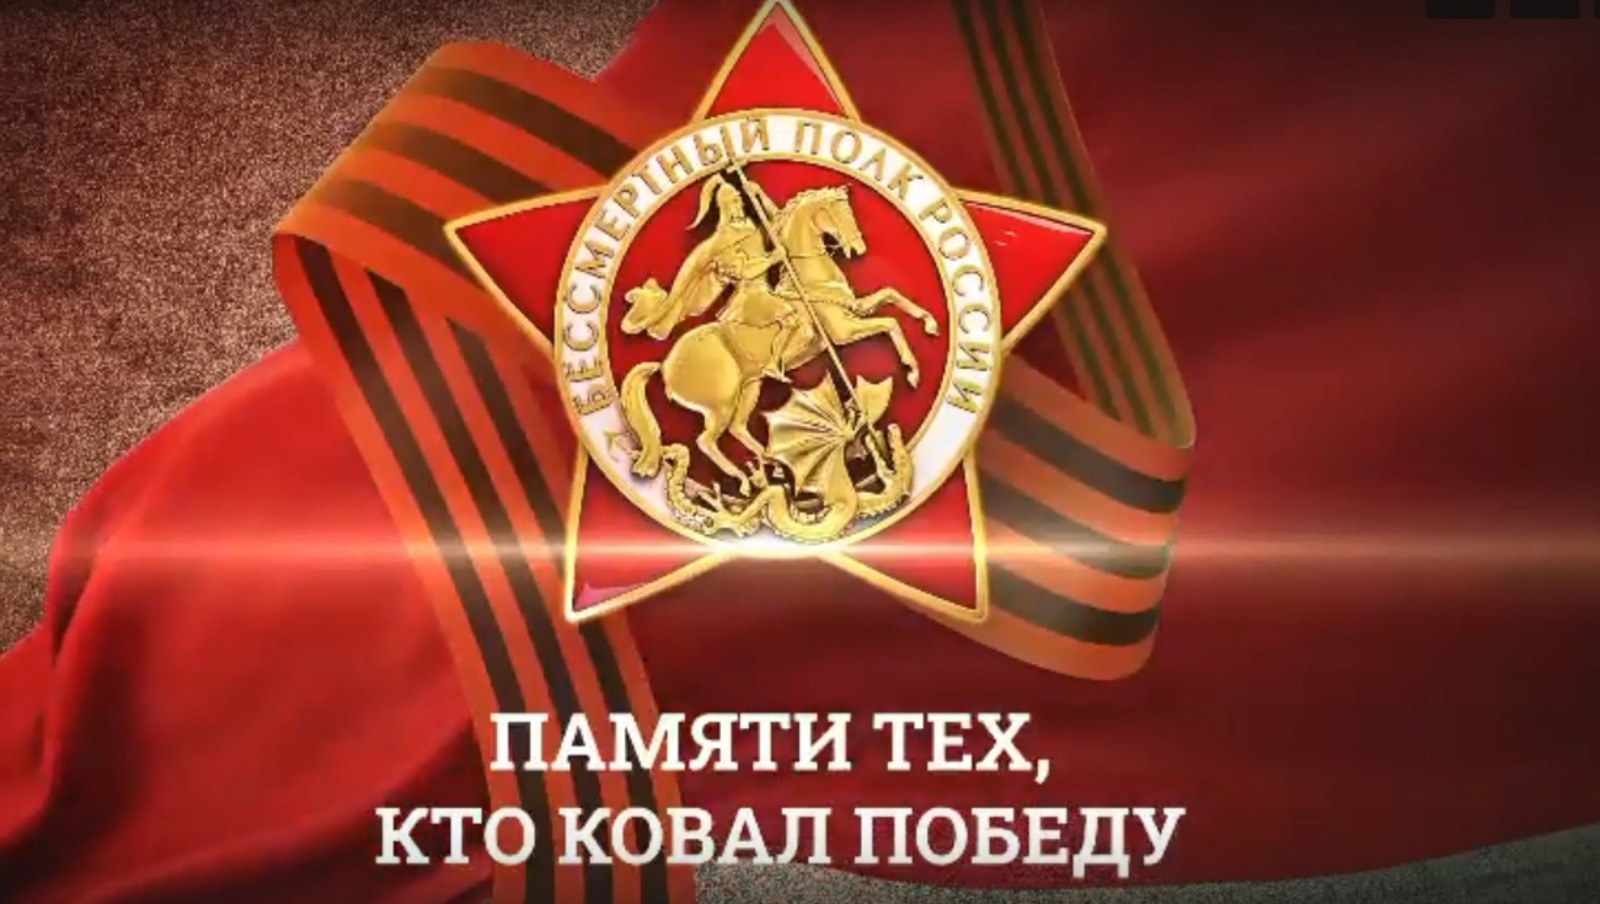 скриншот видео из сообщества "Объясняем. Башкортостан".